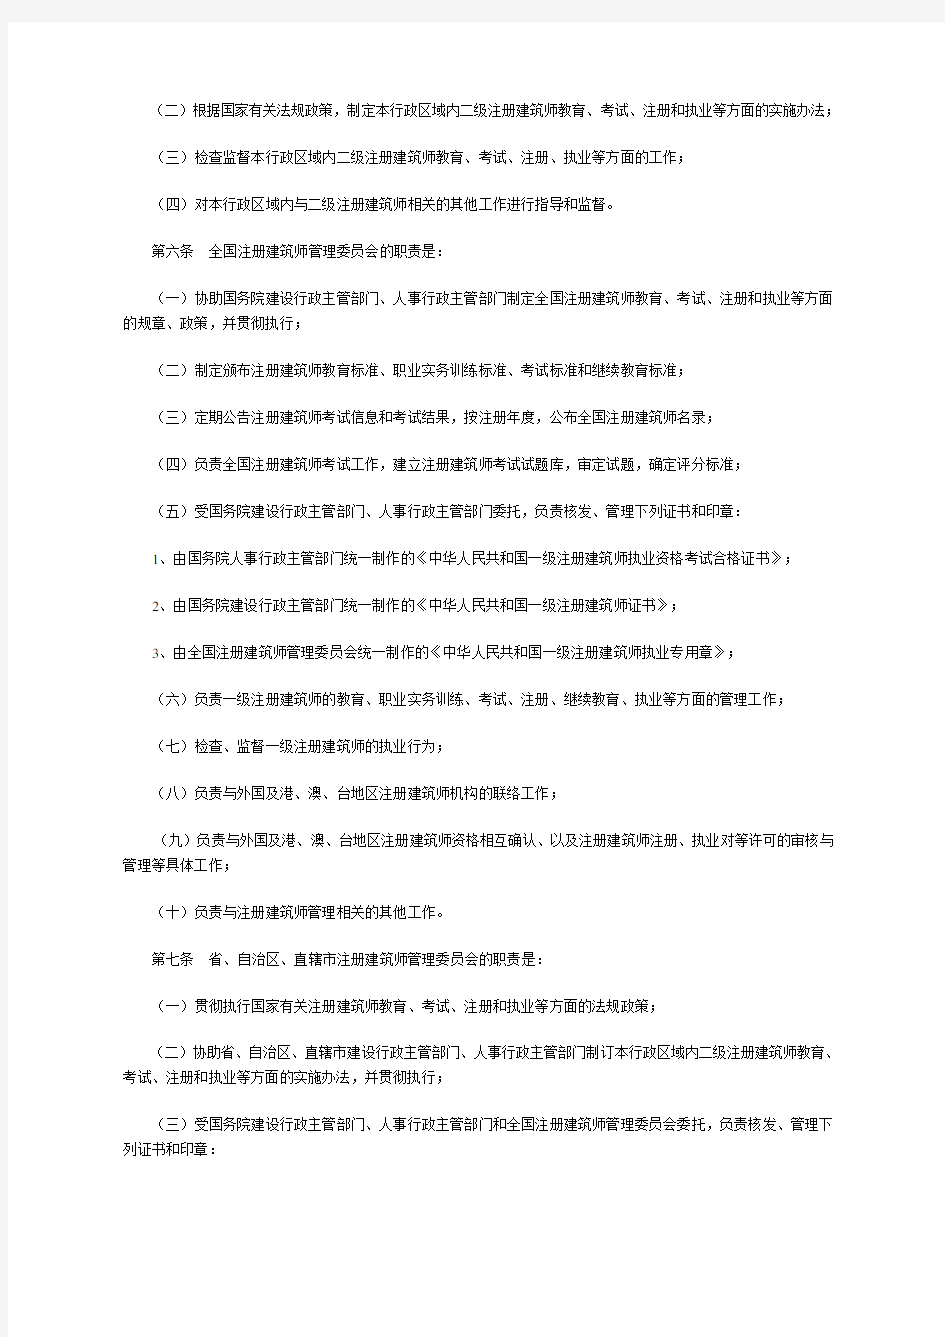 中华人民共和国注册建筑师条例实施细则(建设部第52号令)